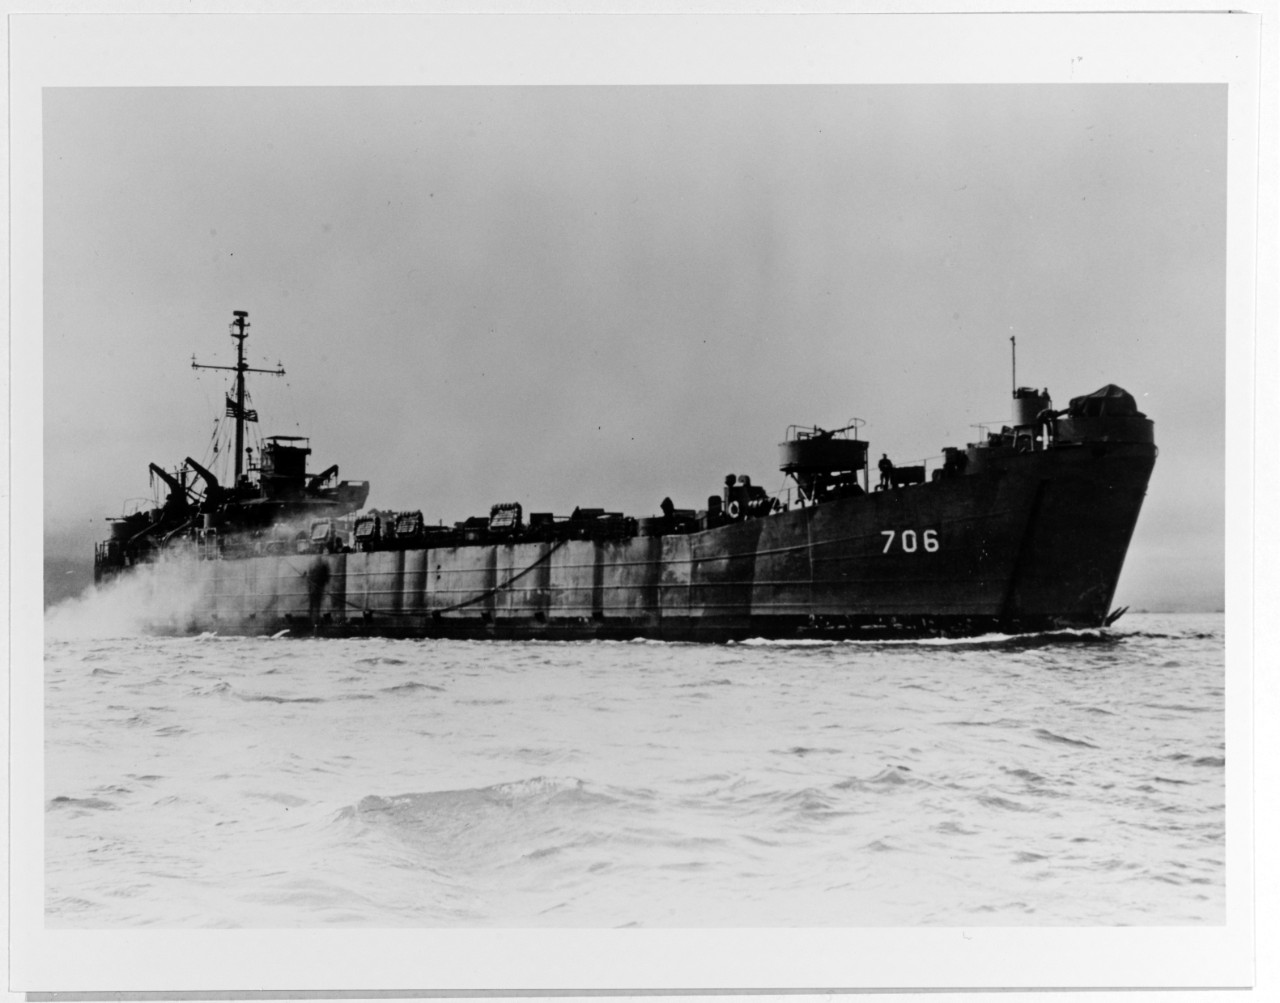 USS LST-706